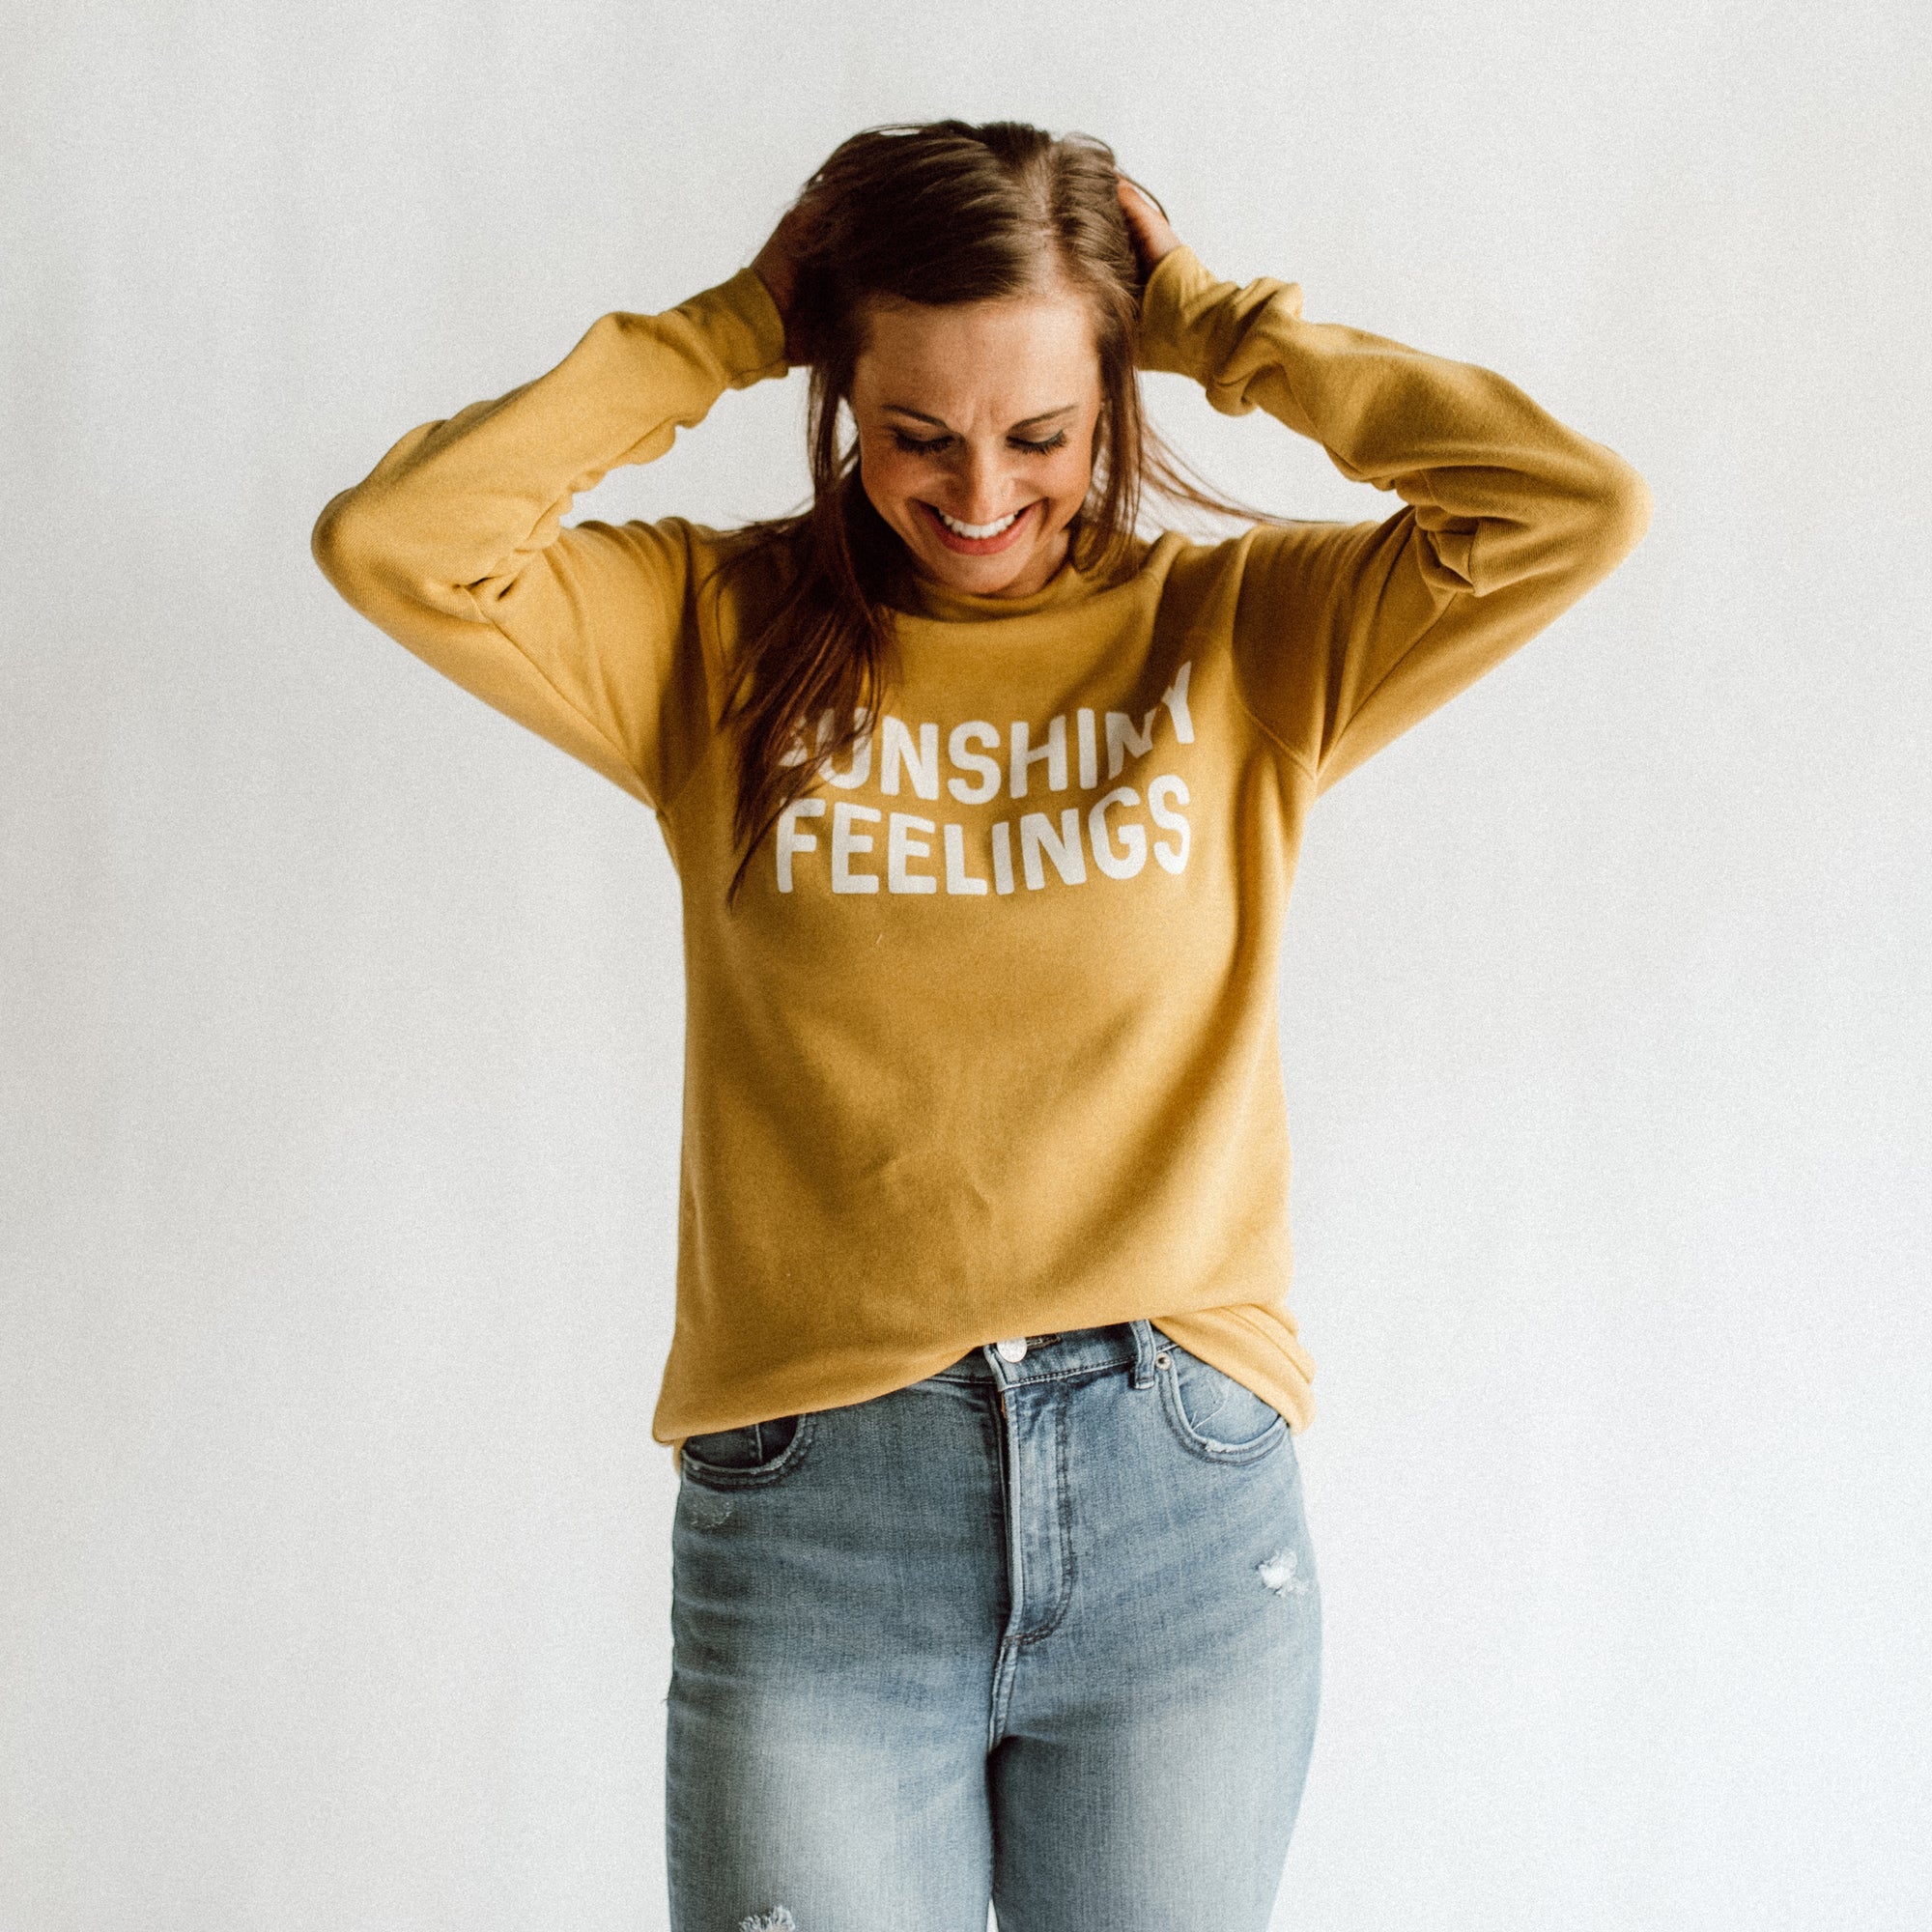 Sunshiny Feelings Fleece Sweatshirt